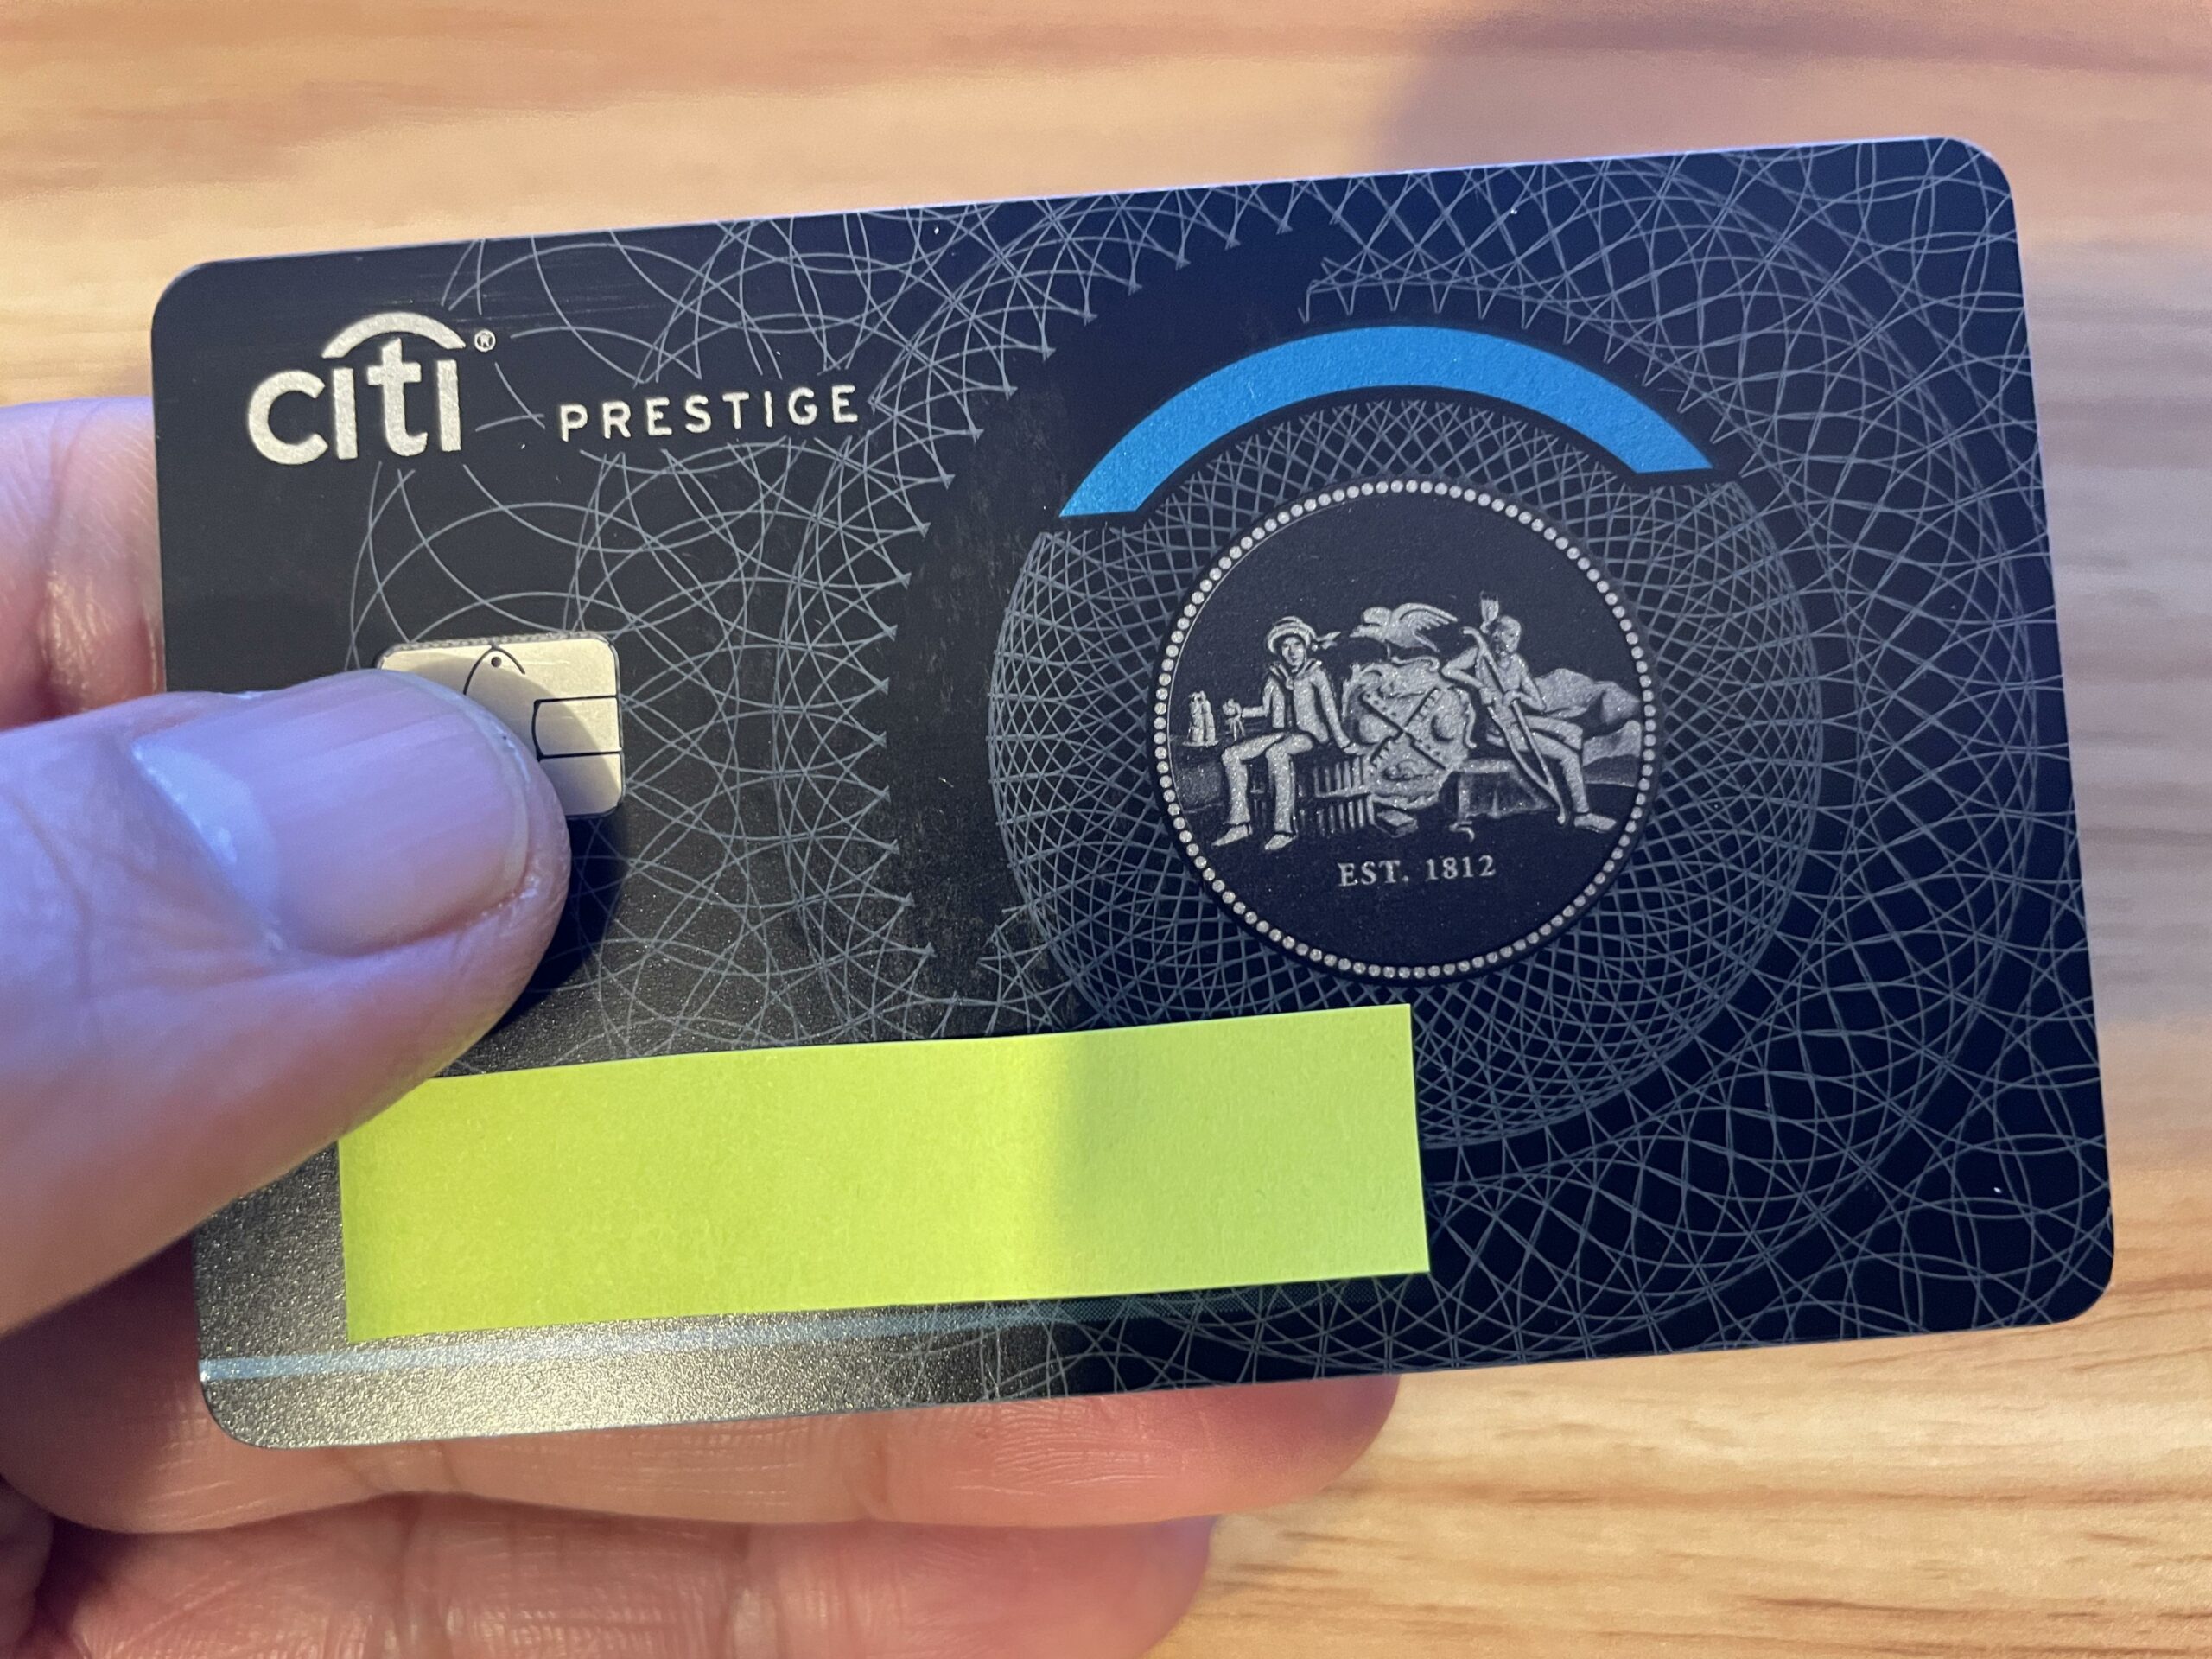 Citi Prestige Credit Card.